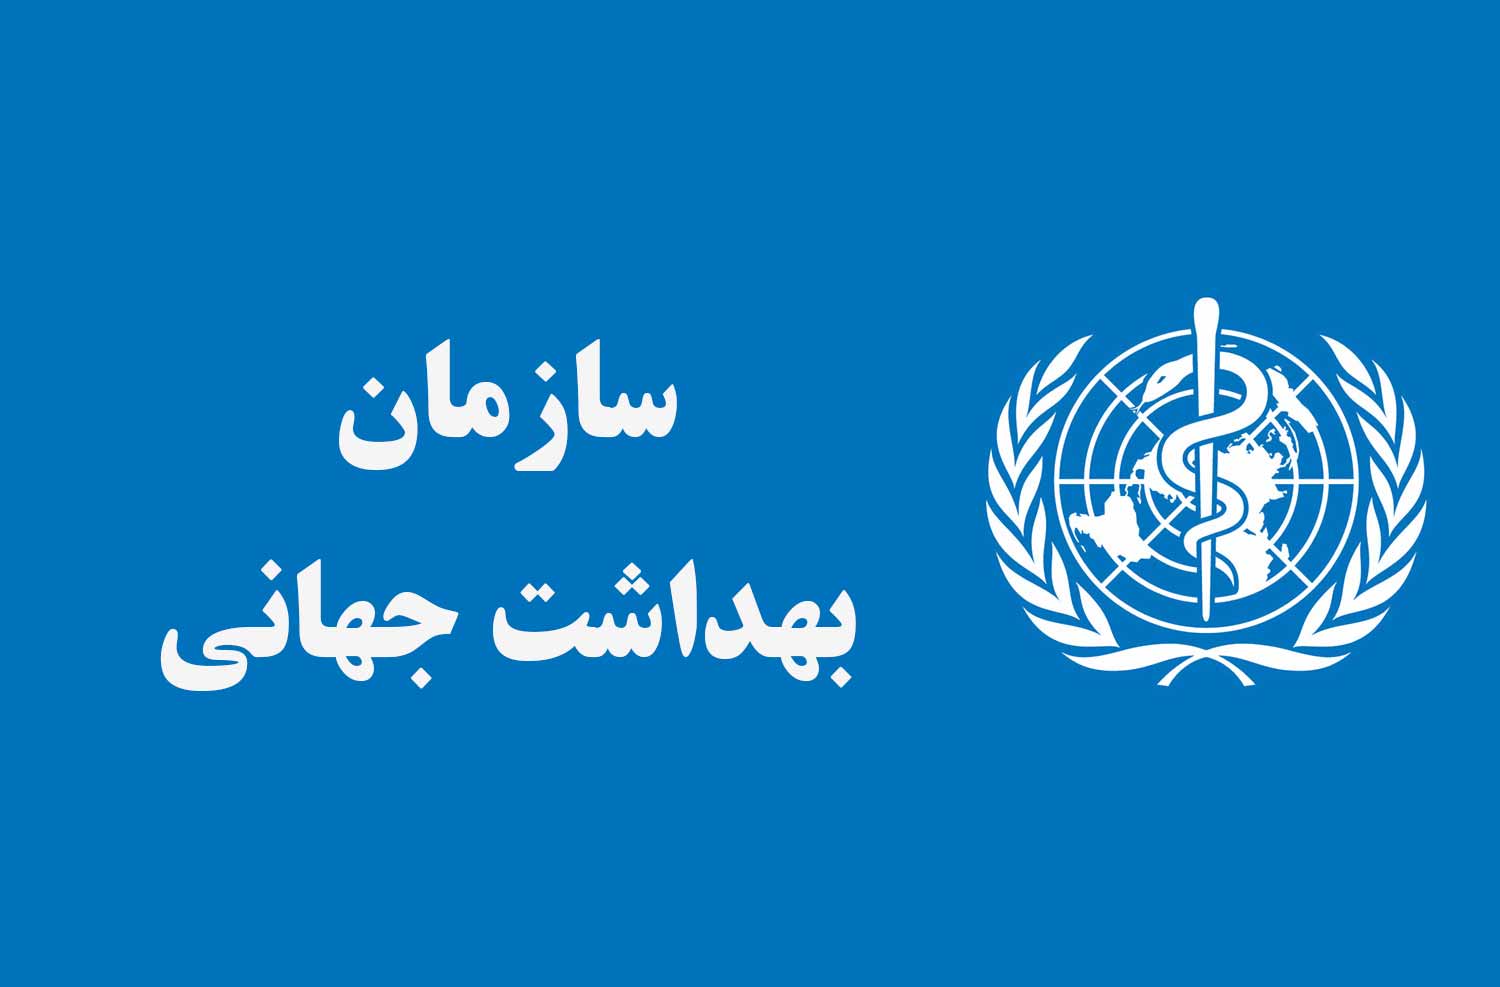 لوگوی سازمان بهداشت جهانی